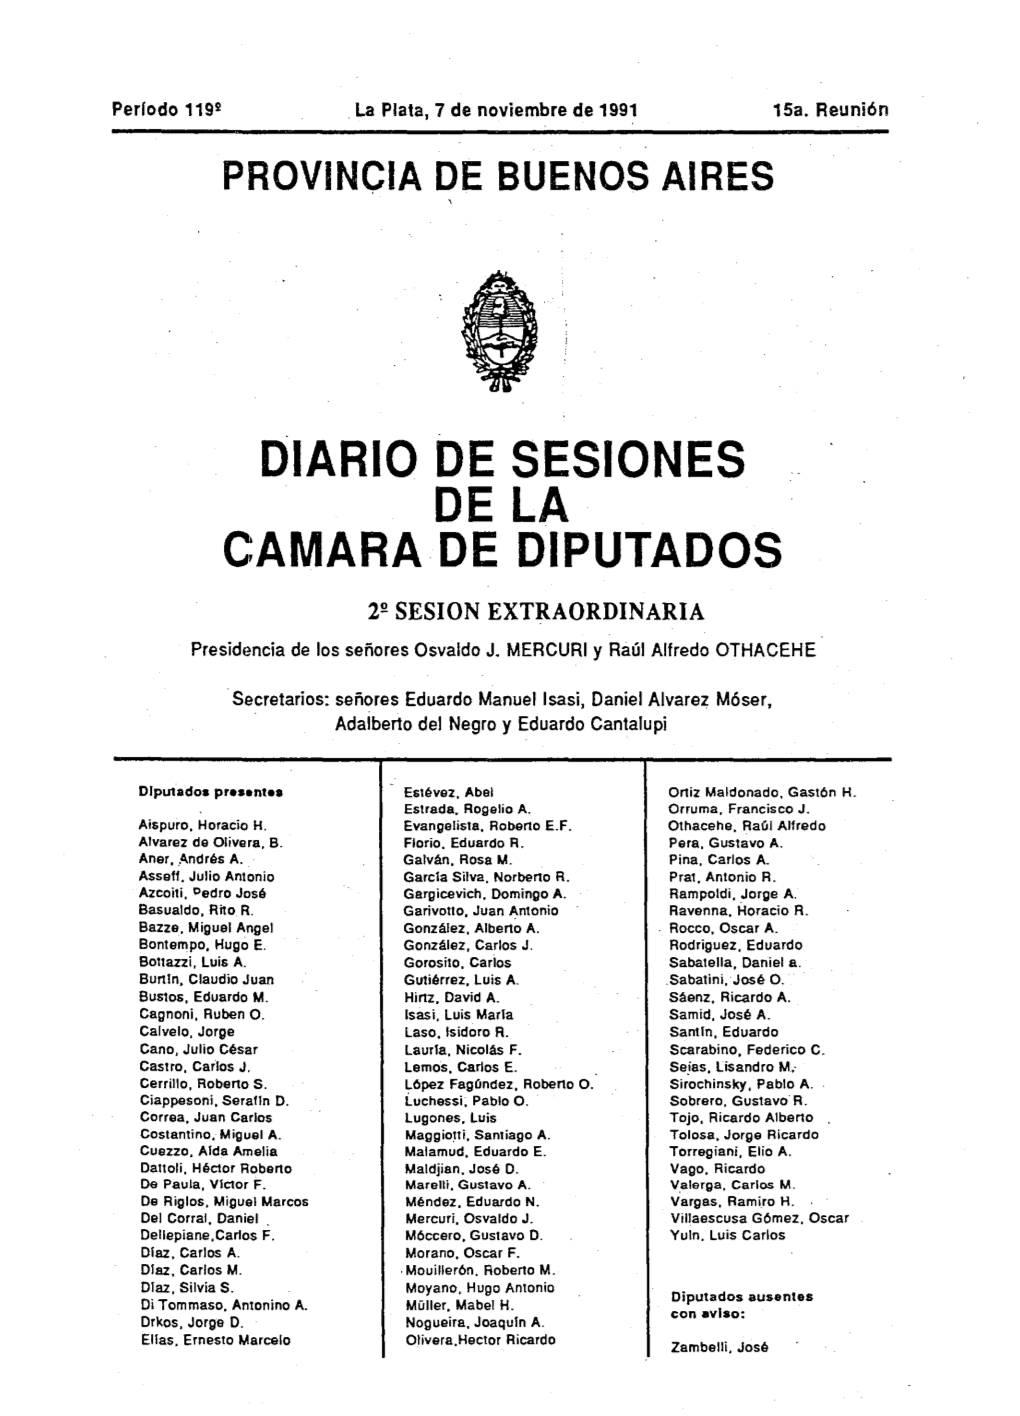 DIARIO DE SESIONES DE LA CAMARA DE DIPUTADOS 2!! SESION EXTRAORDINARIA Presidencia De Los Señores Osvaldo J